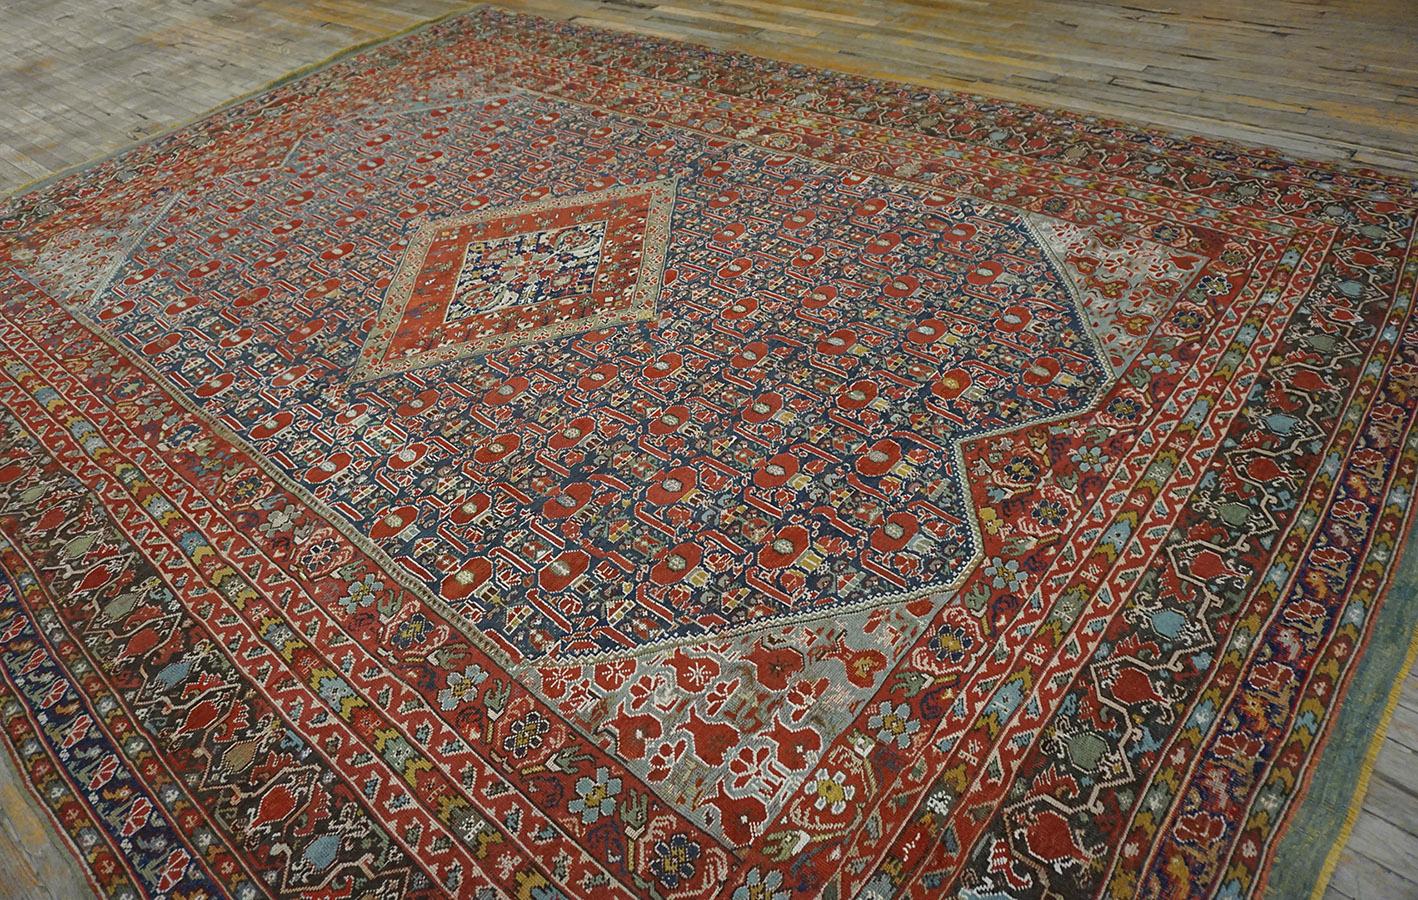 Les tapis de Ghiordes, dans l'ouest de l'Anatolie, sont particulièrement rares en ce qui concerne la taille des pièces. Cet exemple publié présente un motif de posie au centre d'un médaillon en losange, avec huit bordures à motifs, la plus large